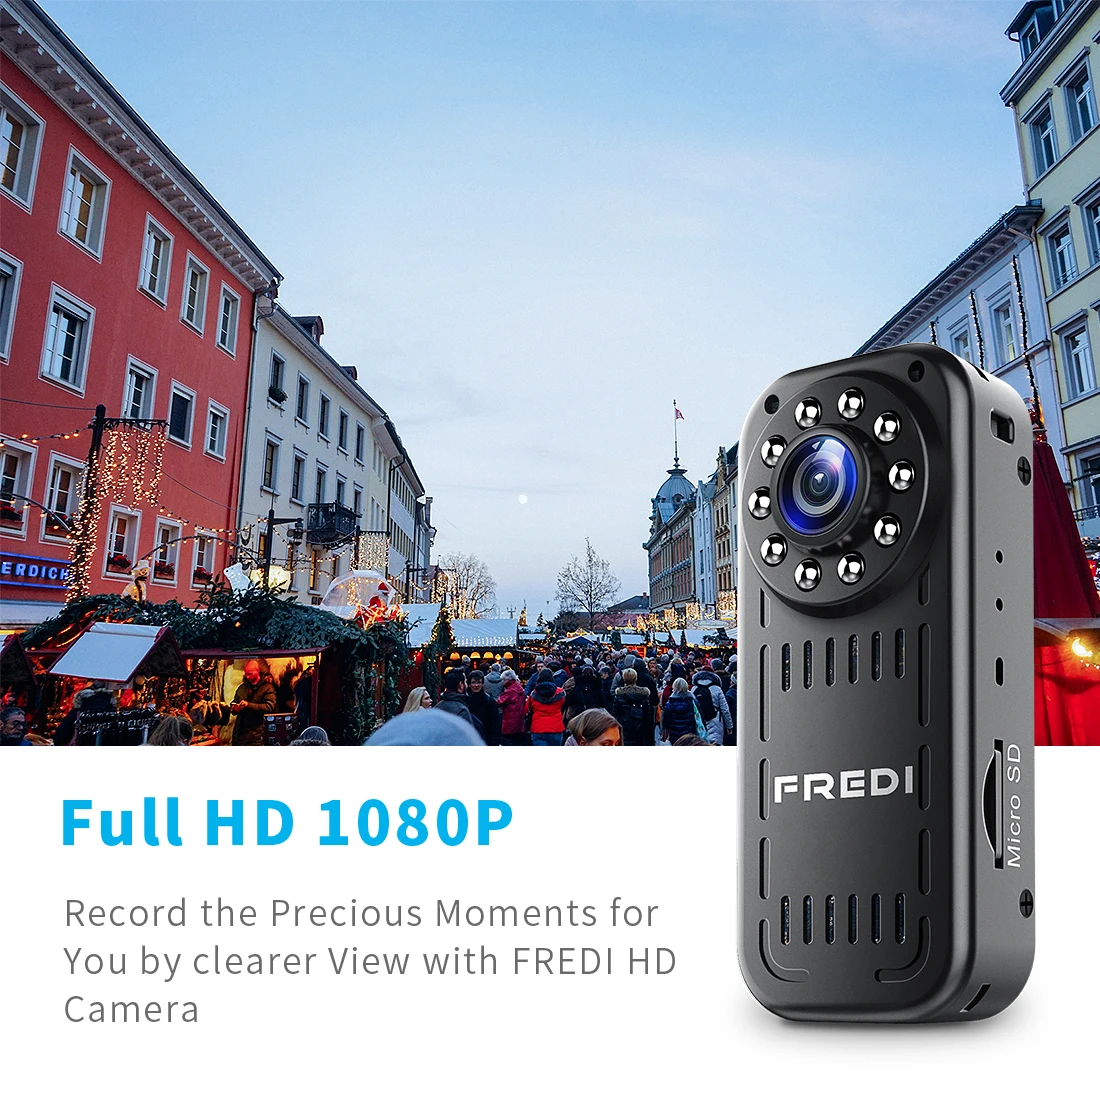 FREDI Mini IP Kamera 2.0 MP 1080P HD P2P Infračervené Nočné Videnie Bezpečnostné Kamery Bezdrôtové Vonkajšie WIFI Fotoaparát Podpora 128G TF Karty